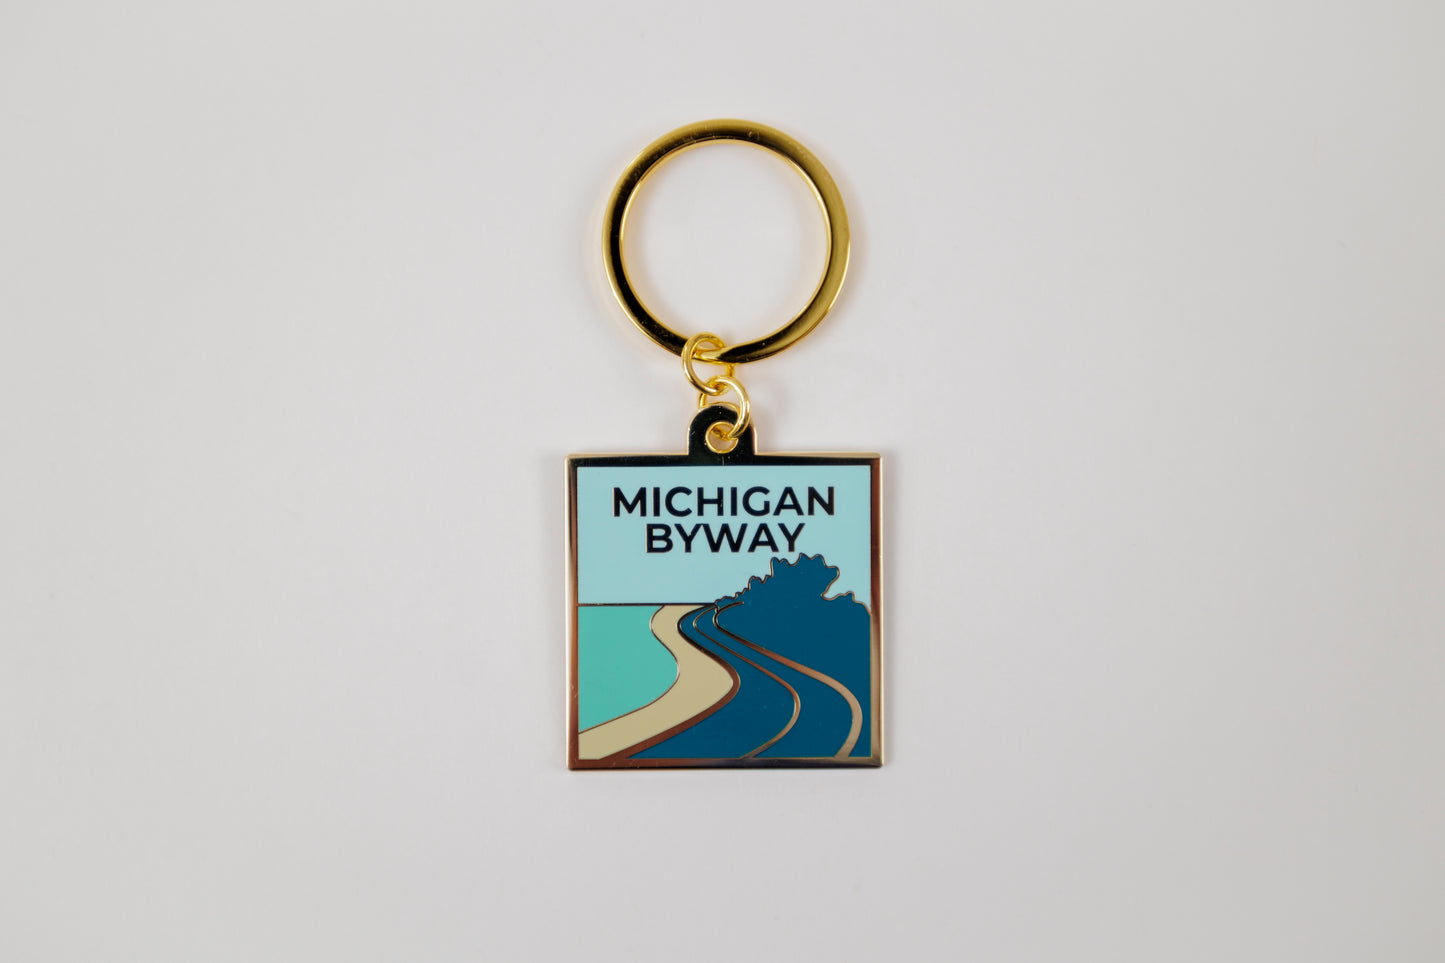 Michigan Byway Enamel Keychain